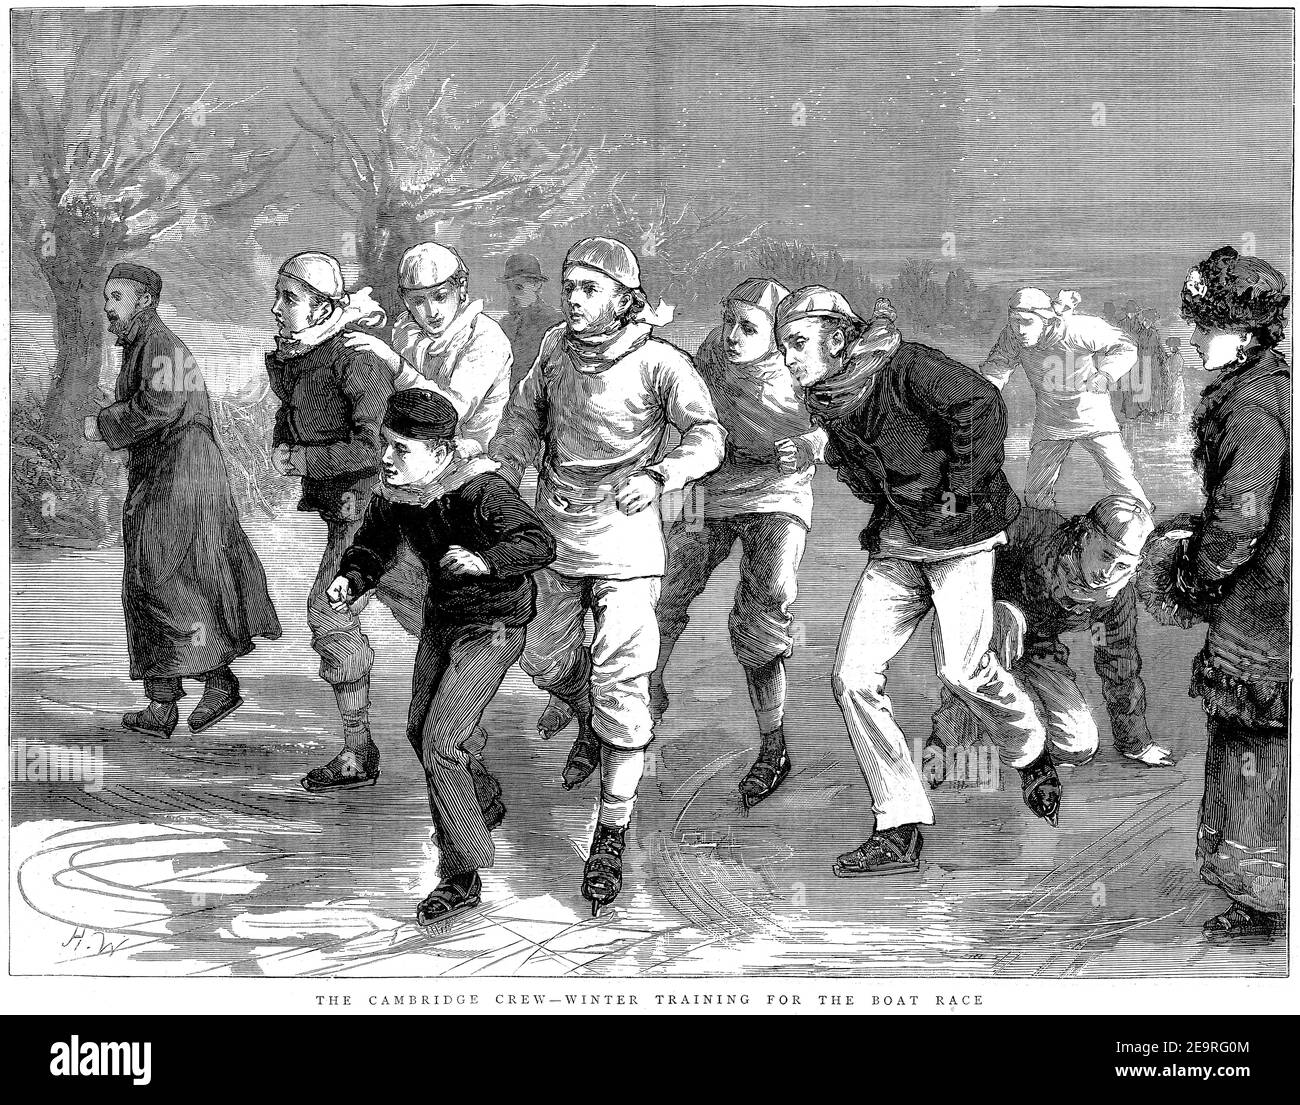 Incisione della squadra di barca Cambridge in allenamento invernale, 1879 Foto Stock